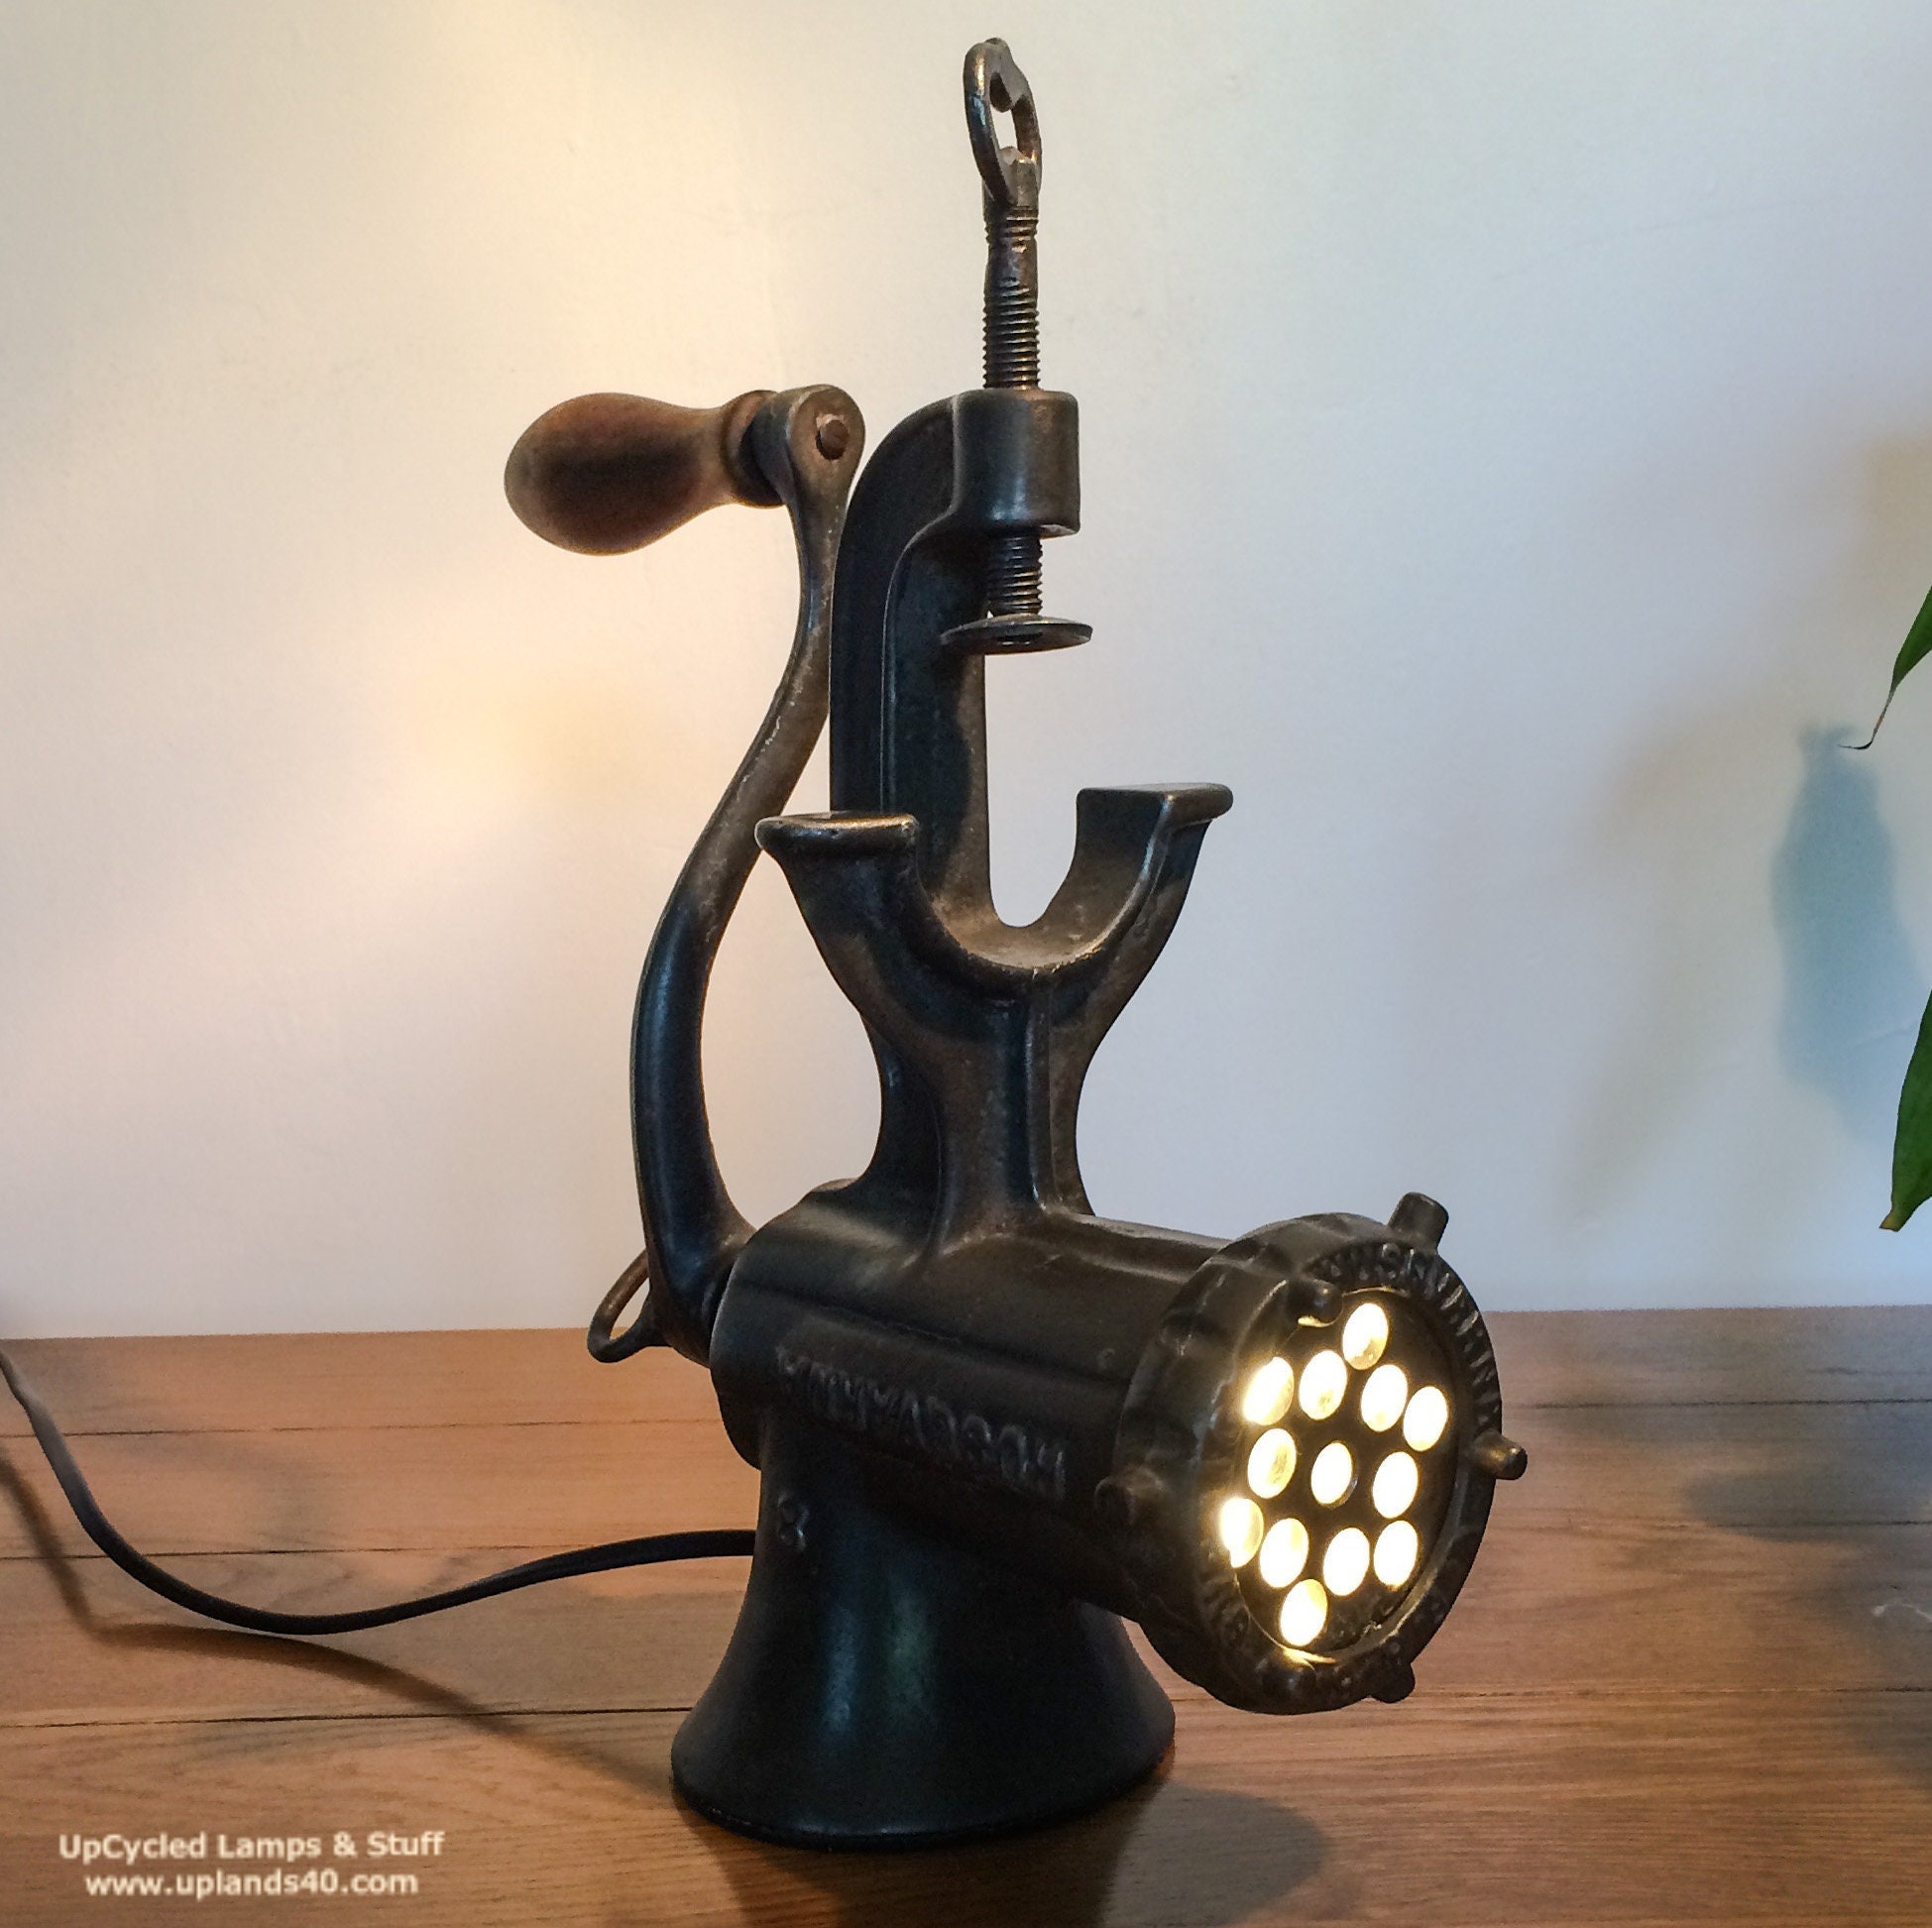 Lampe de Table Upcyclée. Millésime Husqvarna | C1920 Hachoir en Fonte. avec Ampoule Intégrée Donnant